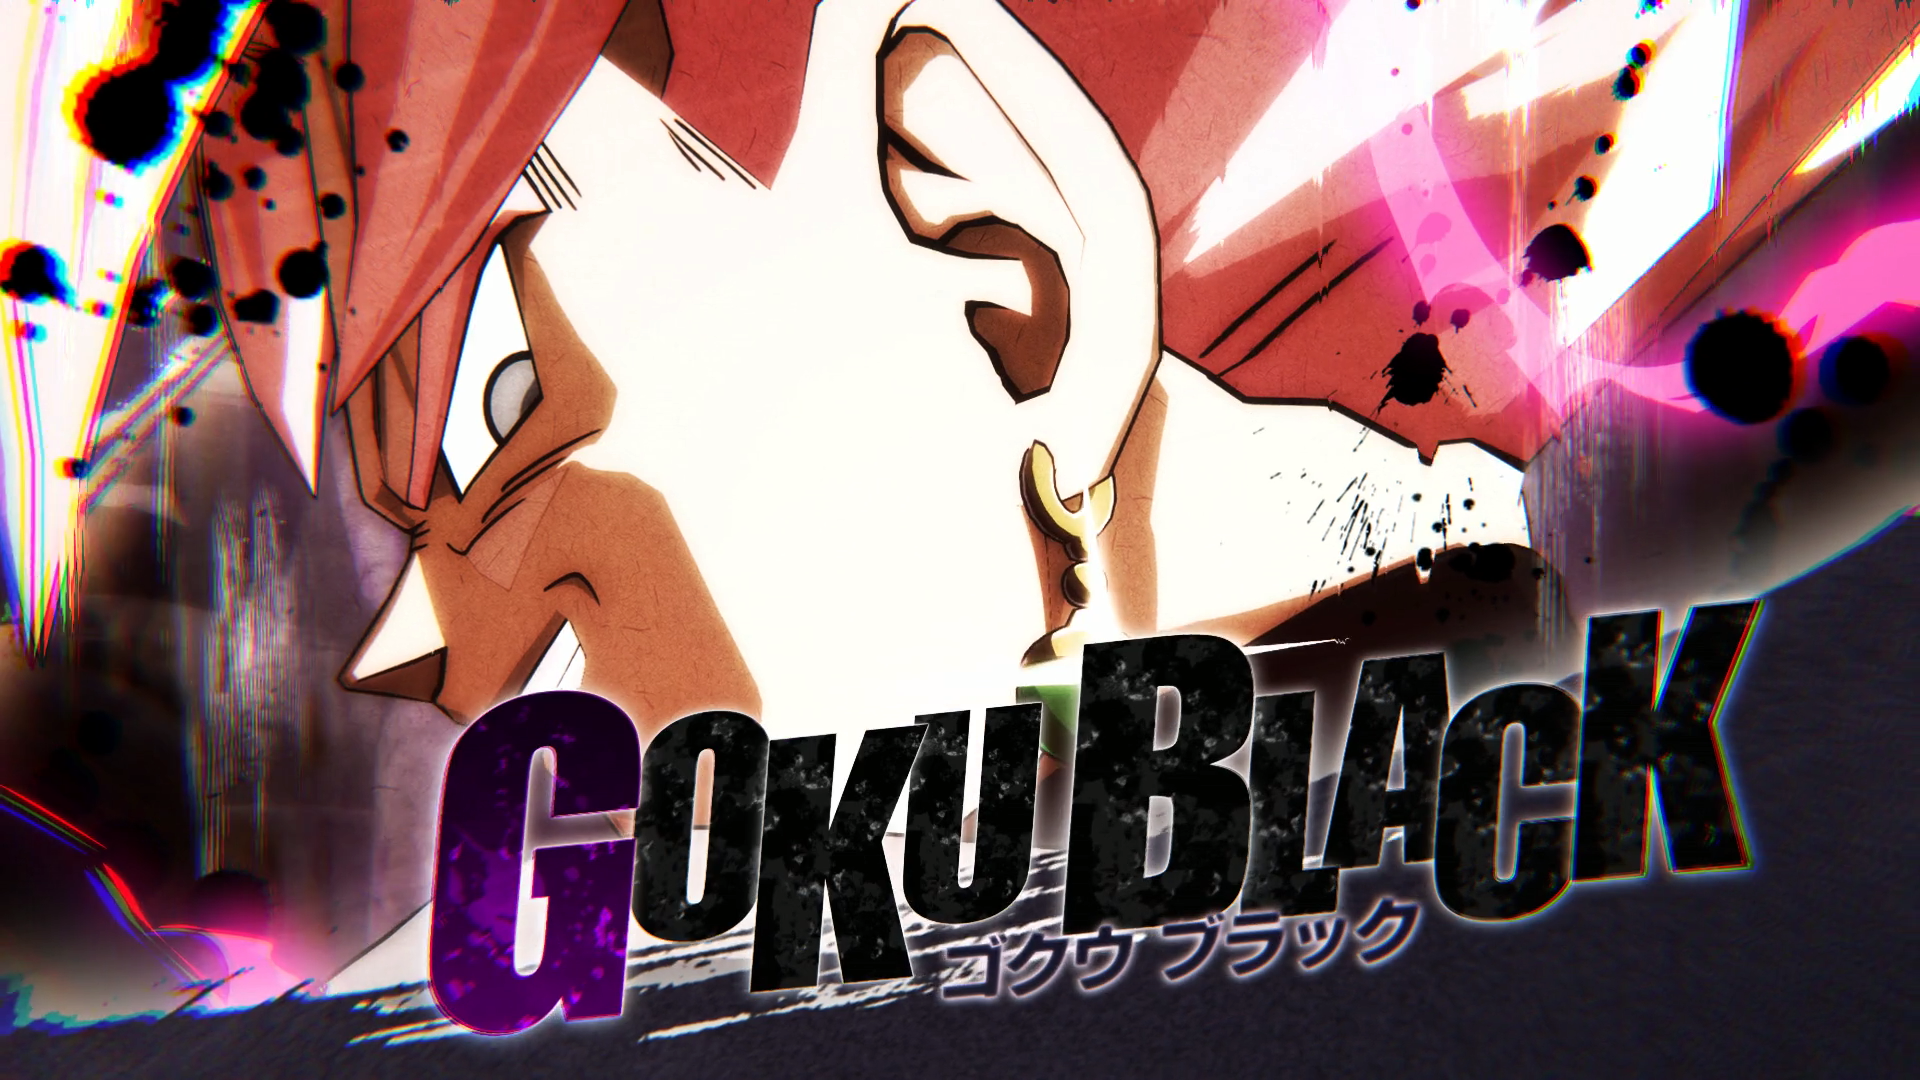 Goku Black Super Saiyan Rose Wallpaper